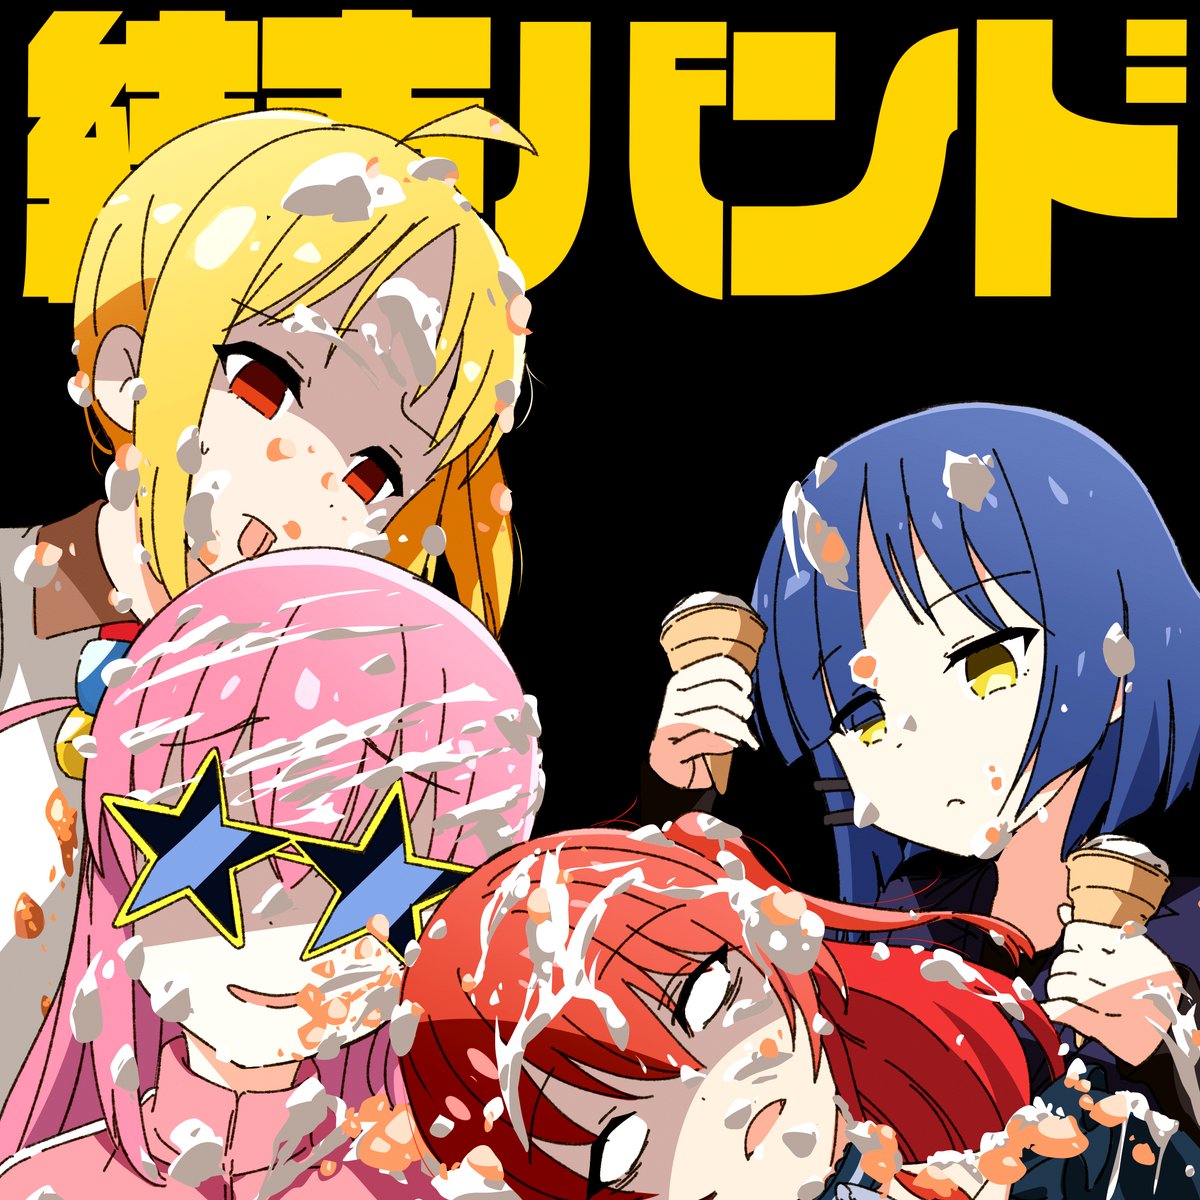 gotou hitori ,ijichi nijika album cover multiple girls 4girls blonde hair blue hair red hair pink hair  illustration images